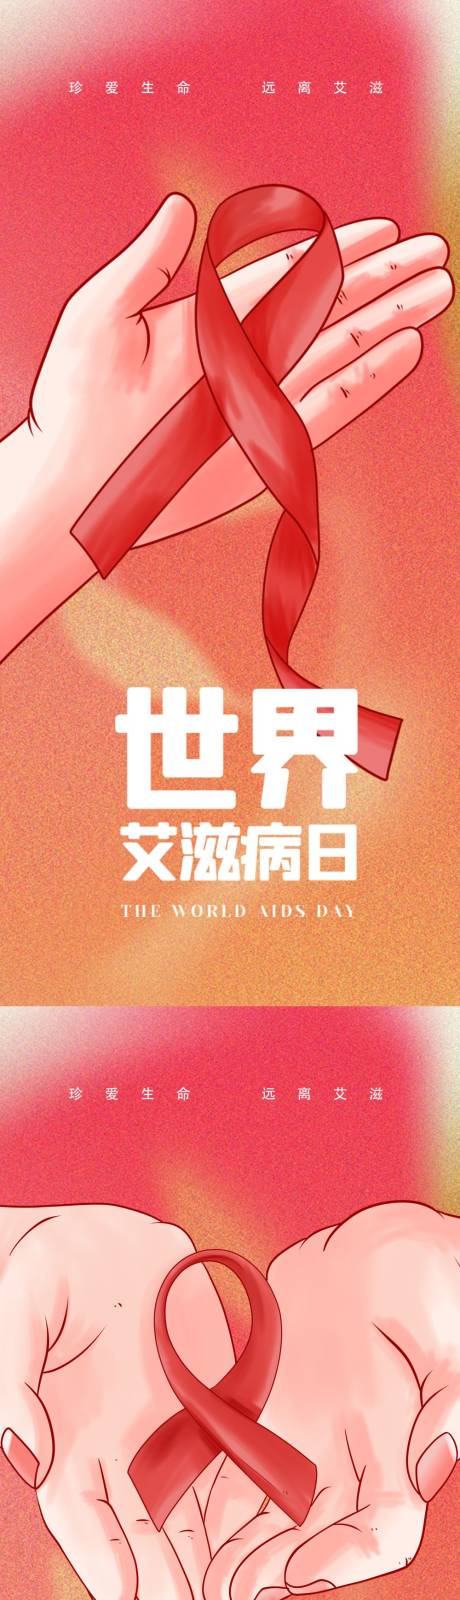 艾滋病世界艾滋病日 